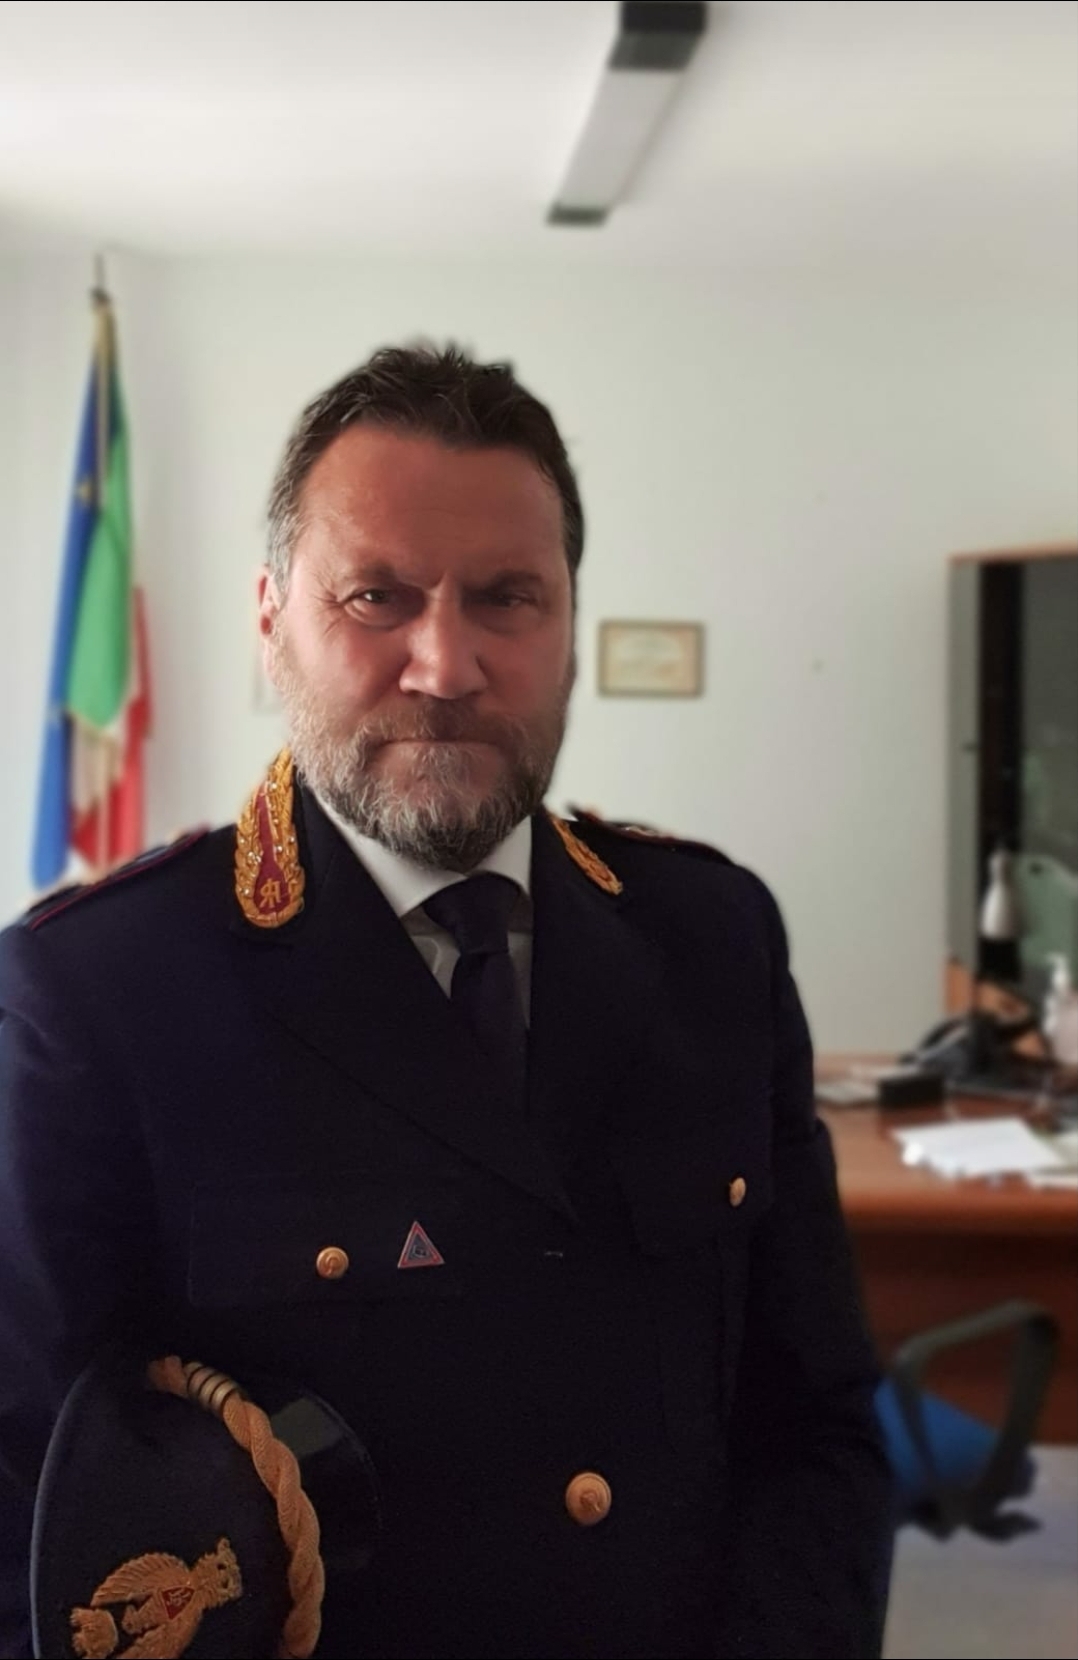 Il nuovo Dirigente del Commissariato di Monopoli è il Dr. Menghi, Vice Questore della Polizia di Stato